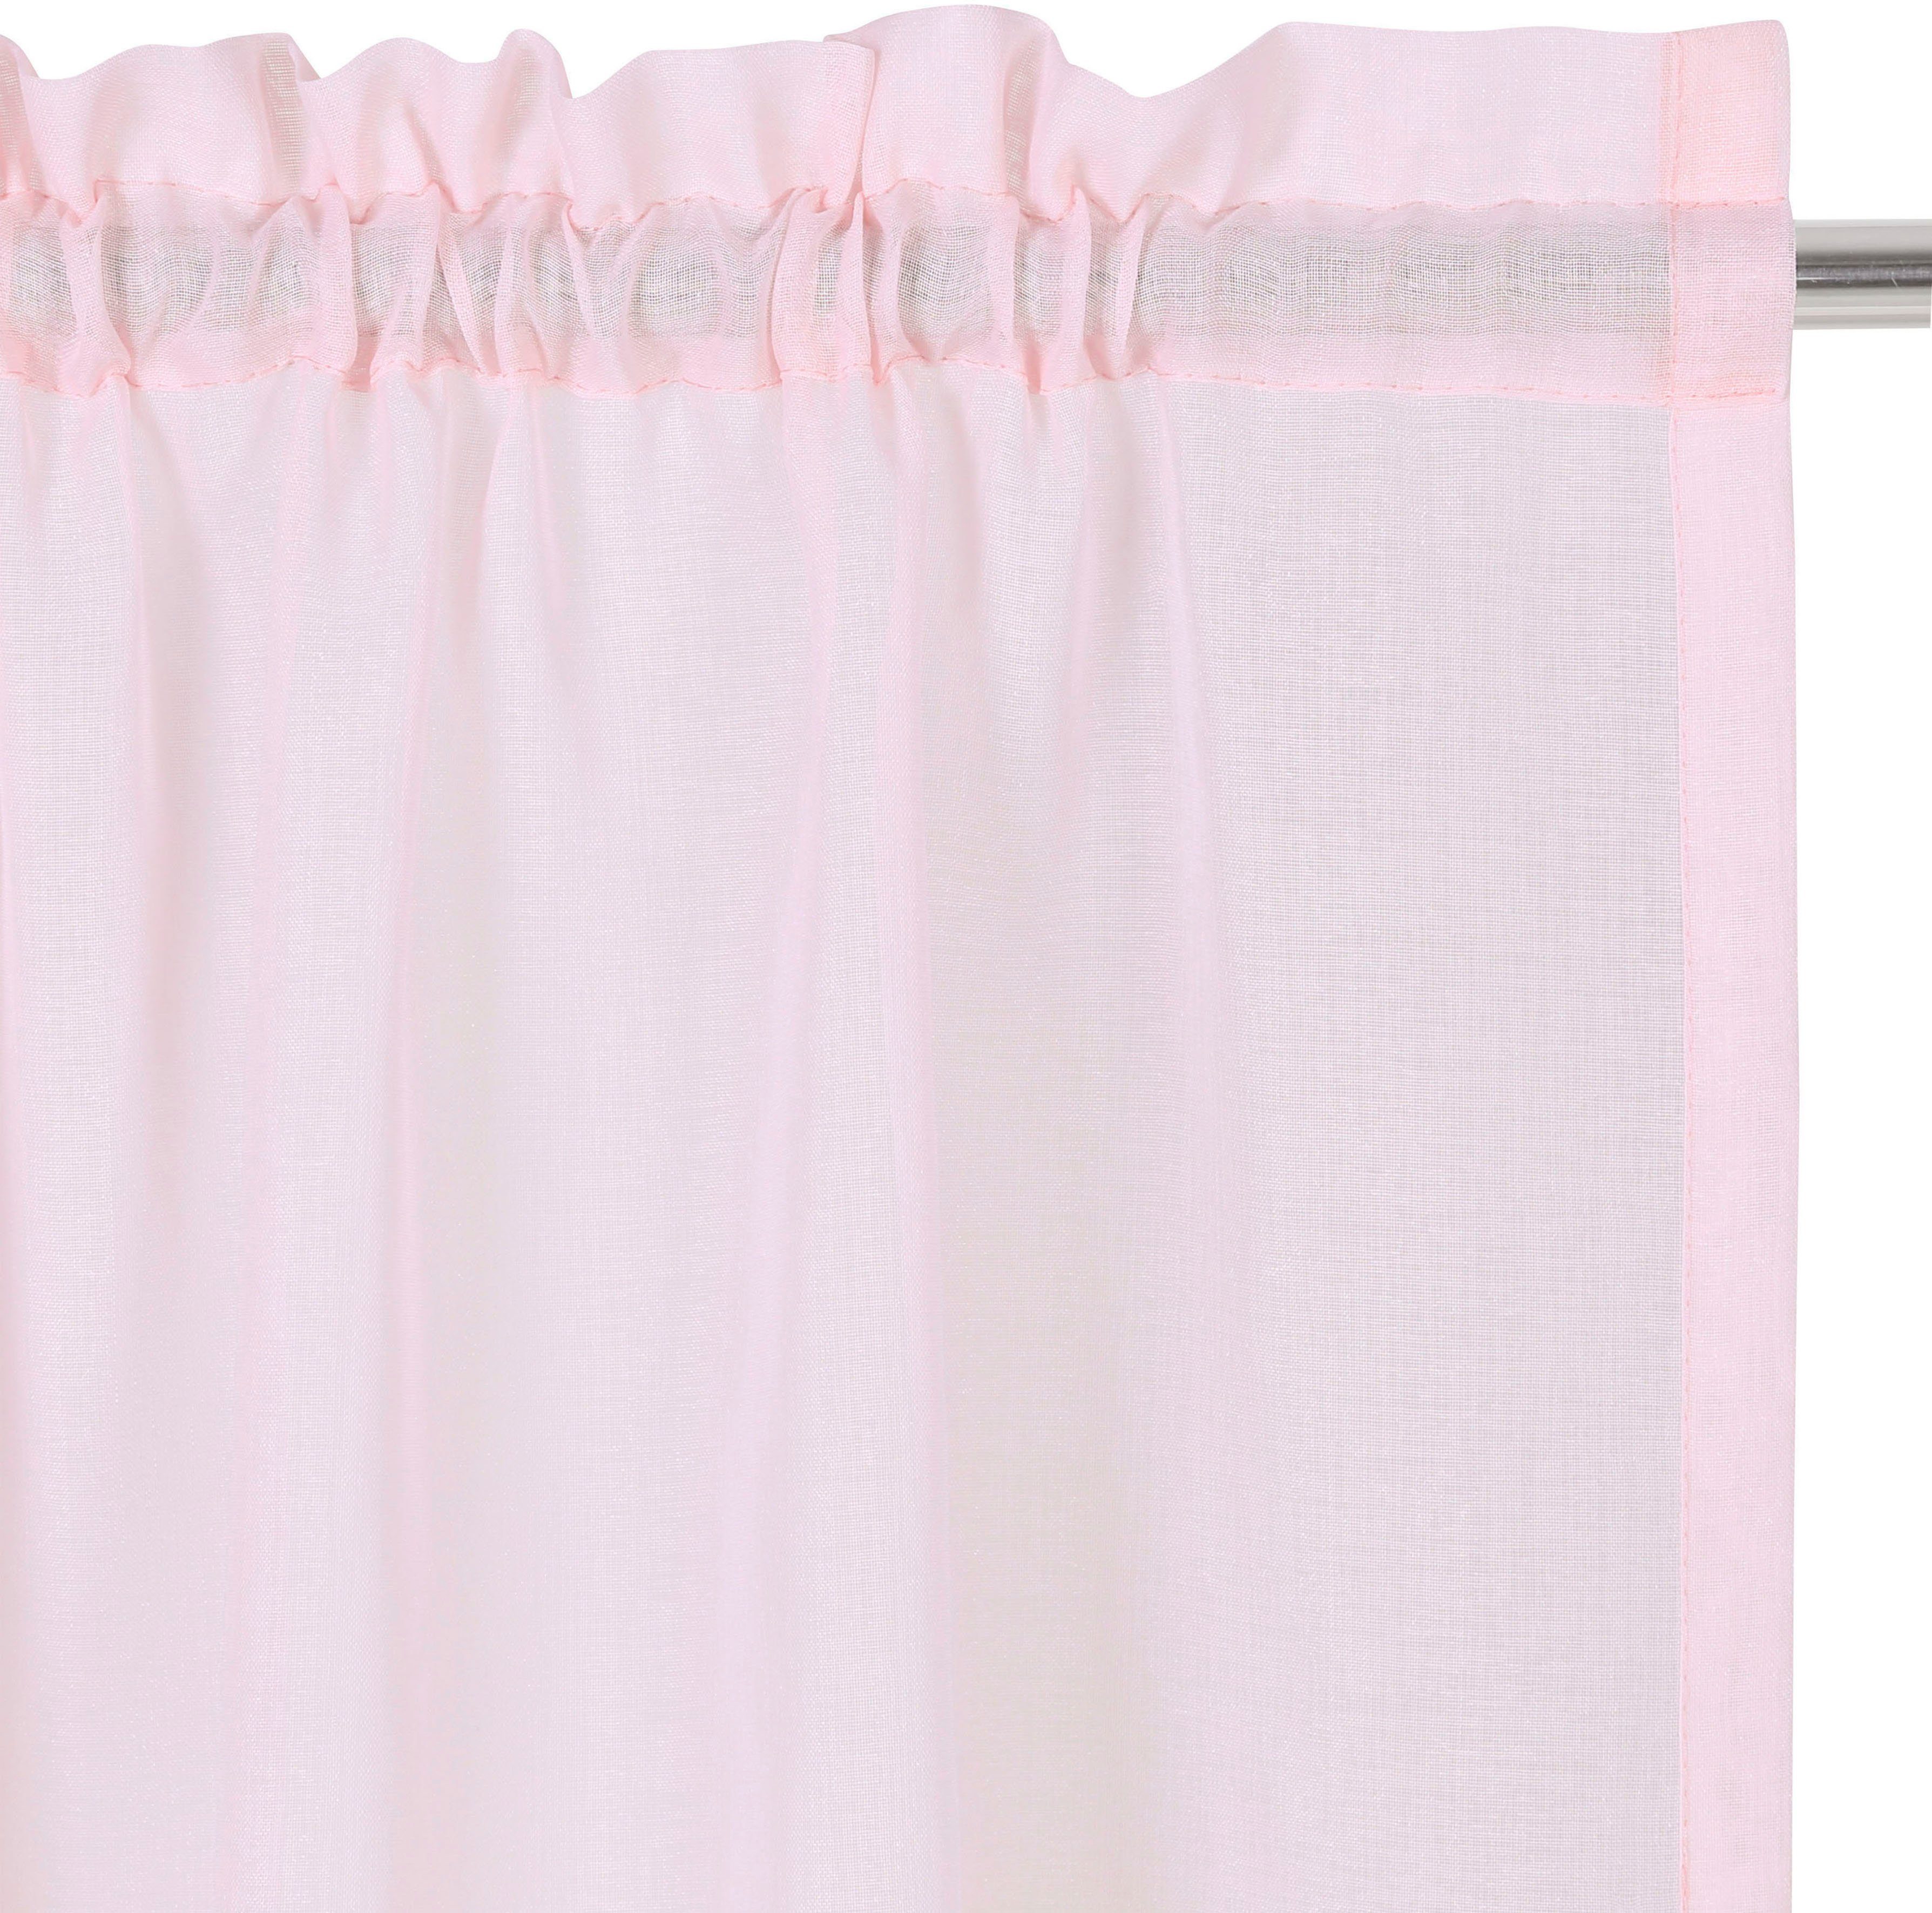 transparent, gemustert, rosé Größen Dolly, Polyester, my verschiedene St), Stangendurchzug, Stangendurchzug gewebt, transparent, home, (1 Gardine